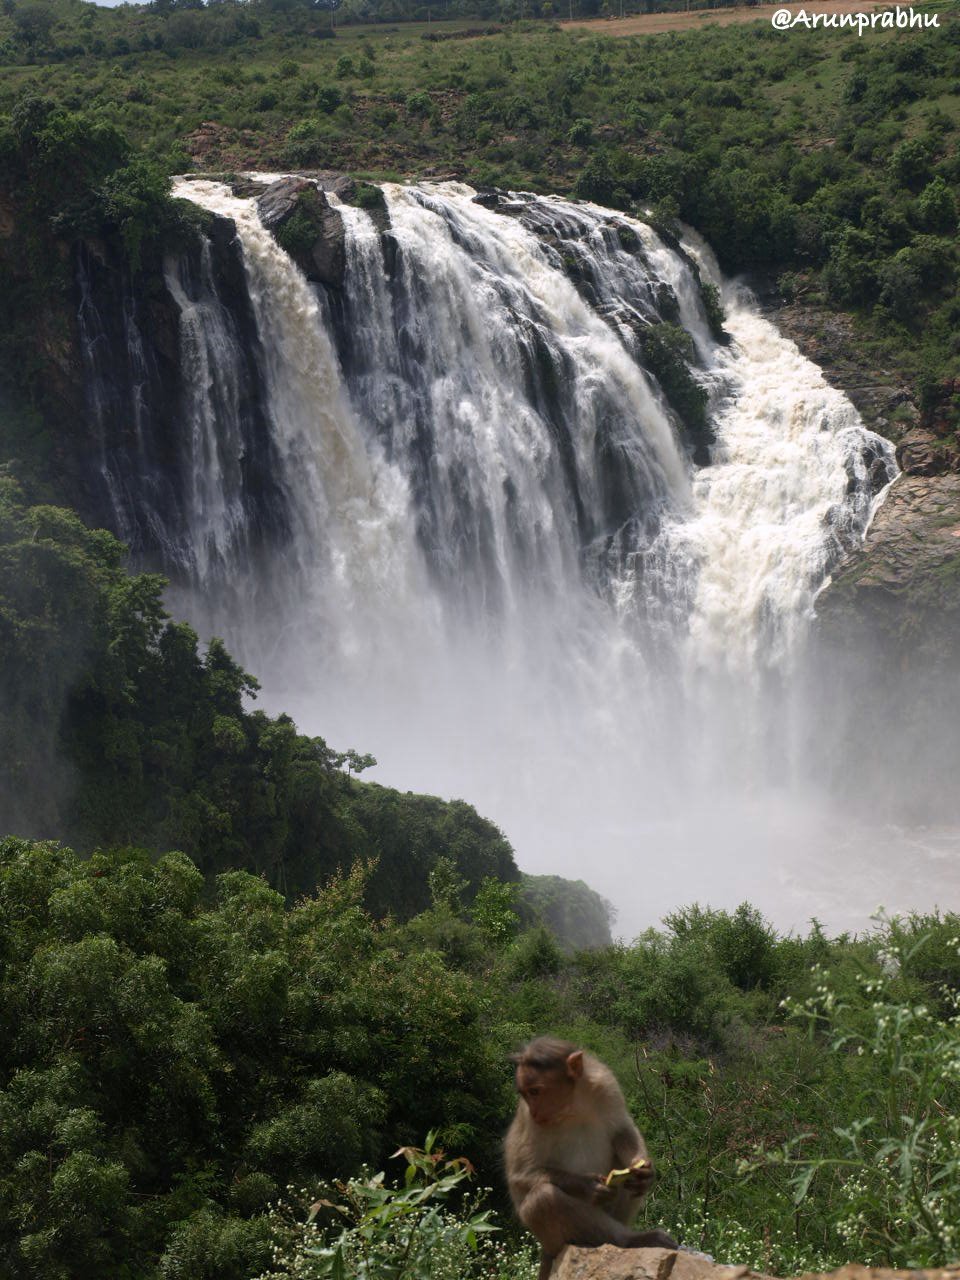 A monkey at Bharachukki Falls!